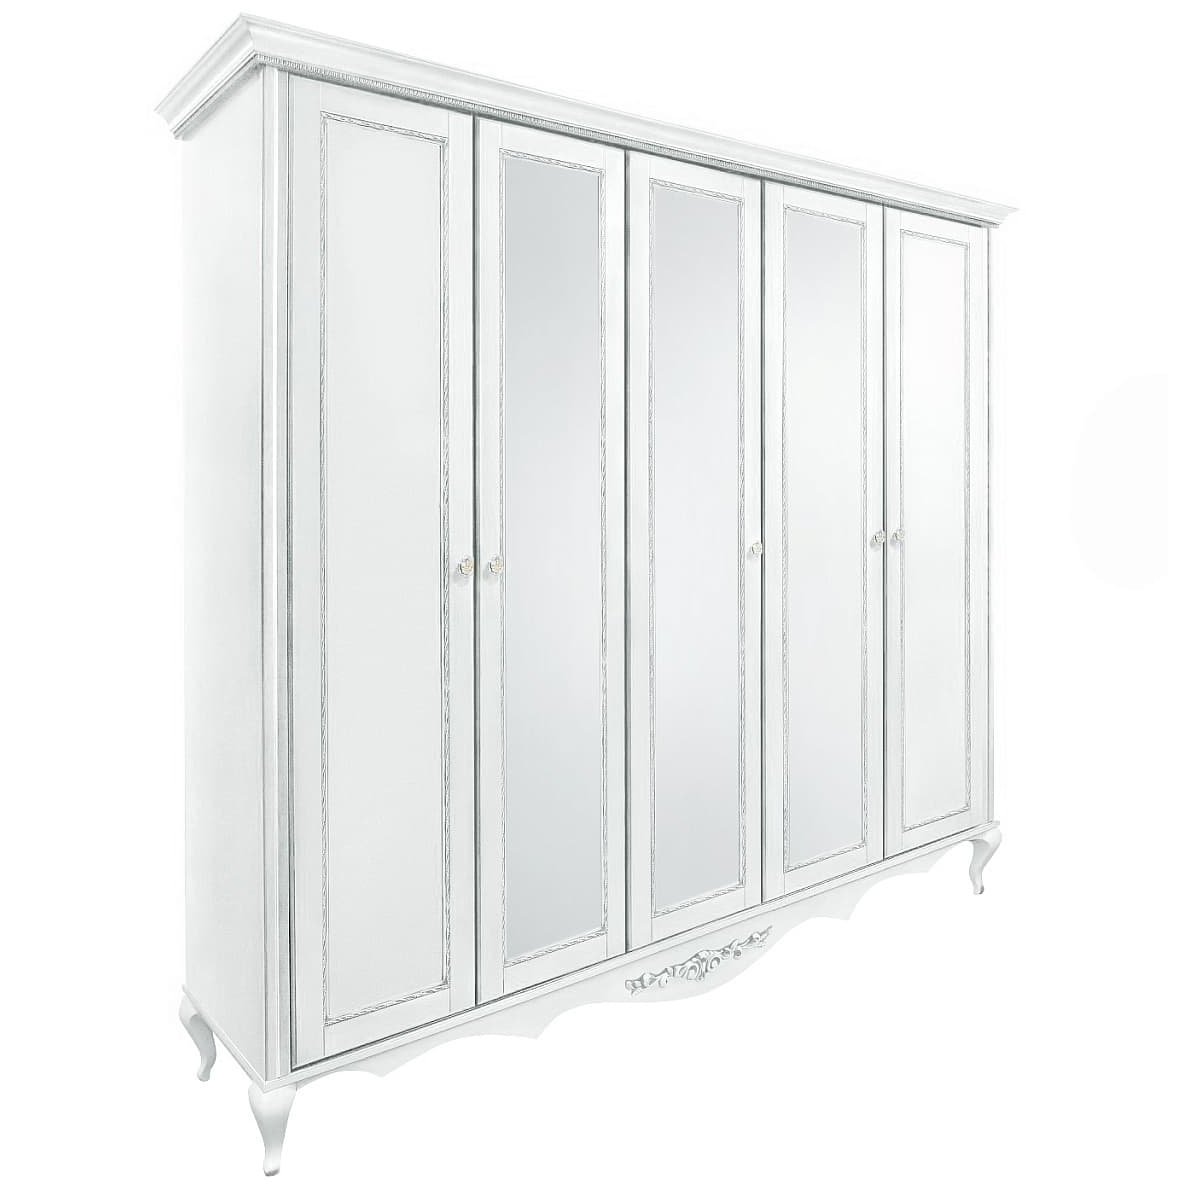 Шкаф платяной Timber Неаполь, 5-ти дверный с зеркалами 249x65x227 см, цвет: белый с серебром (Т-525/BA)Т-525